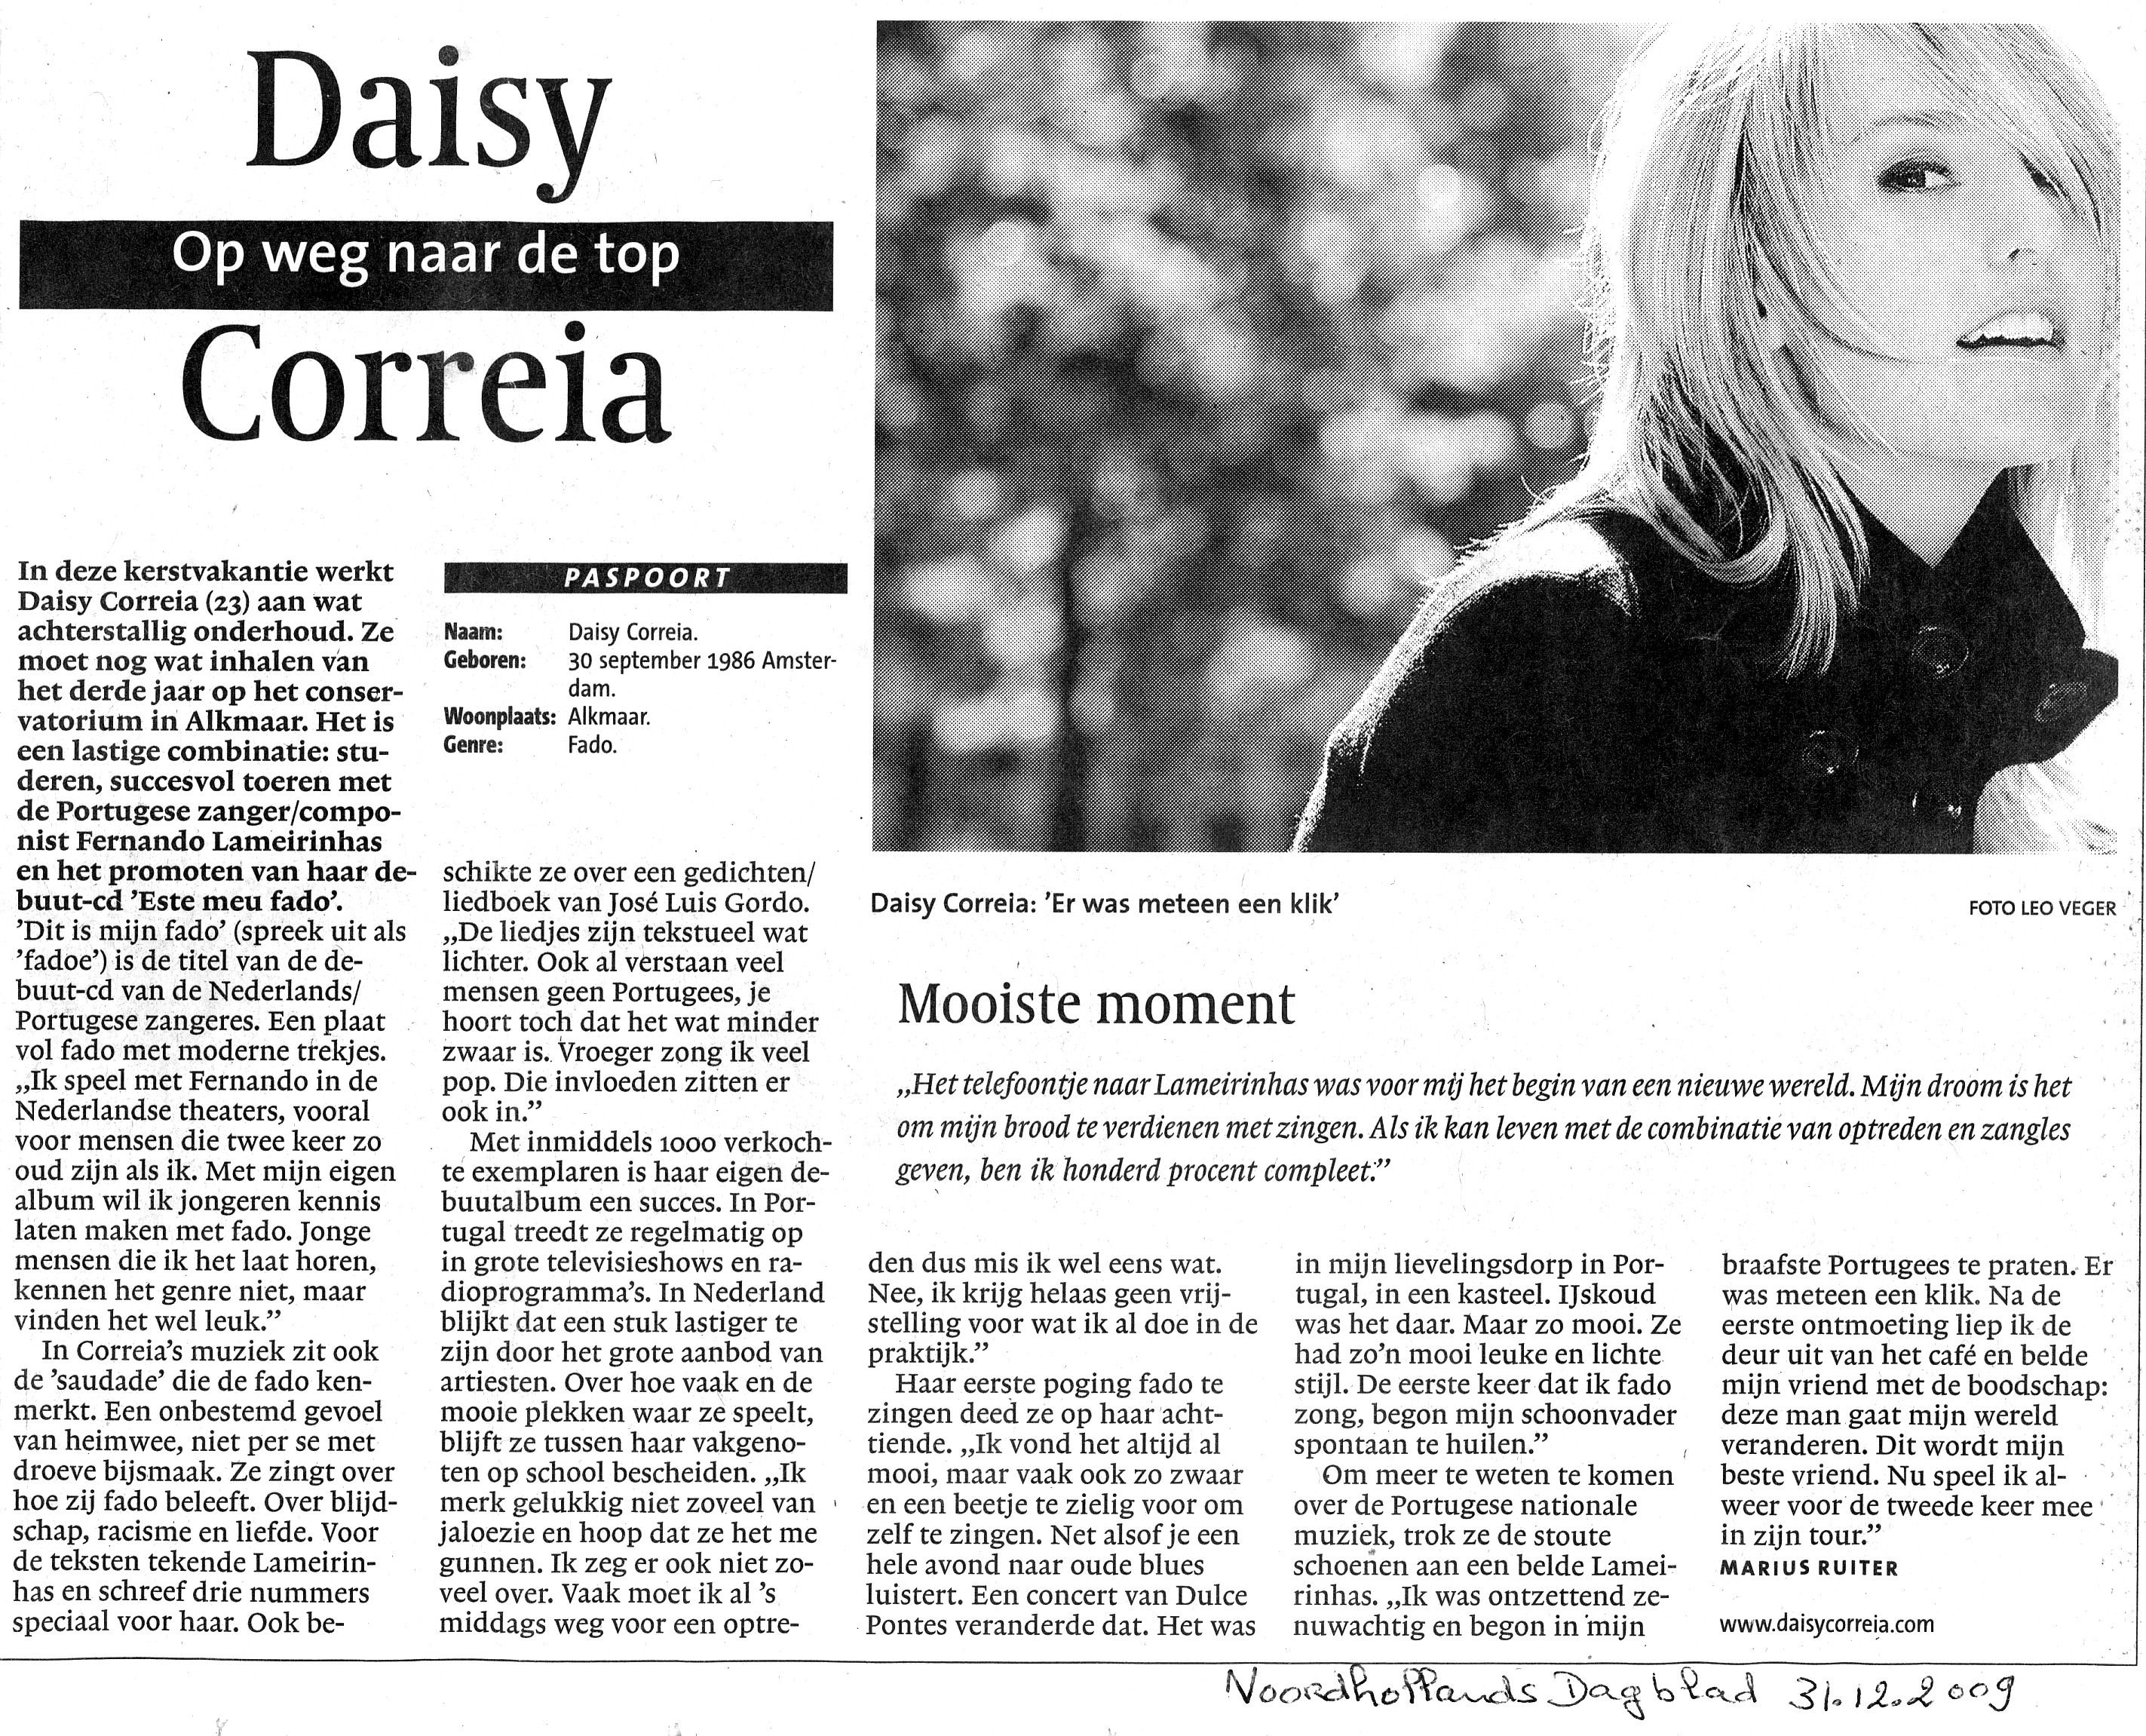 2009-12-31 Artikel over Daisy in NH Dagblad a